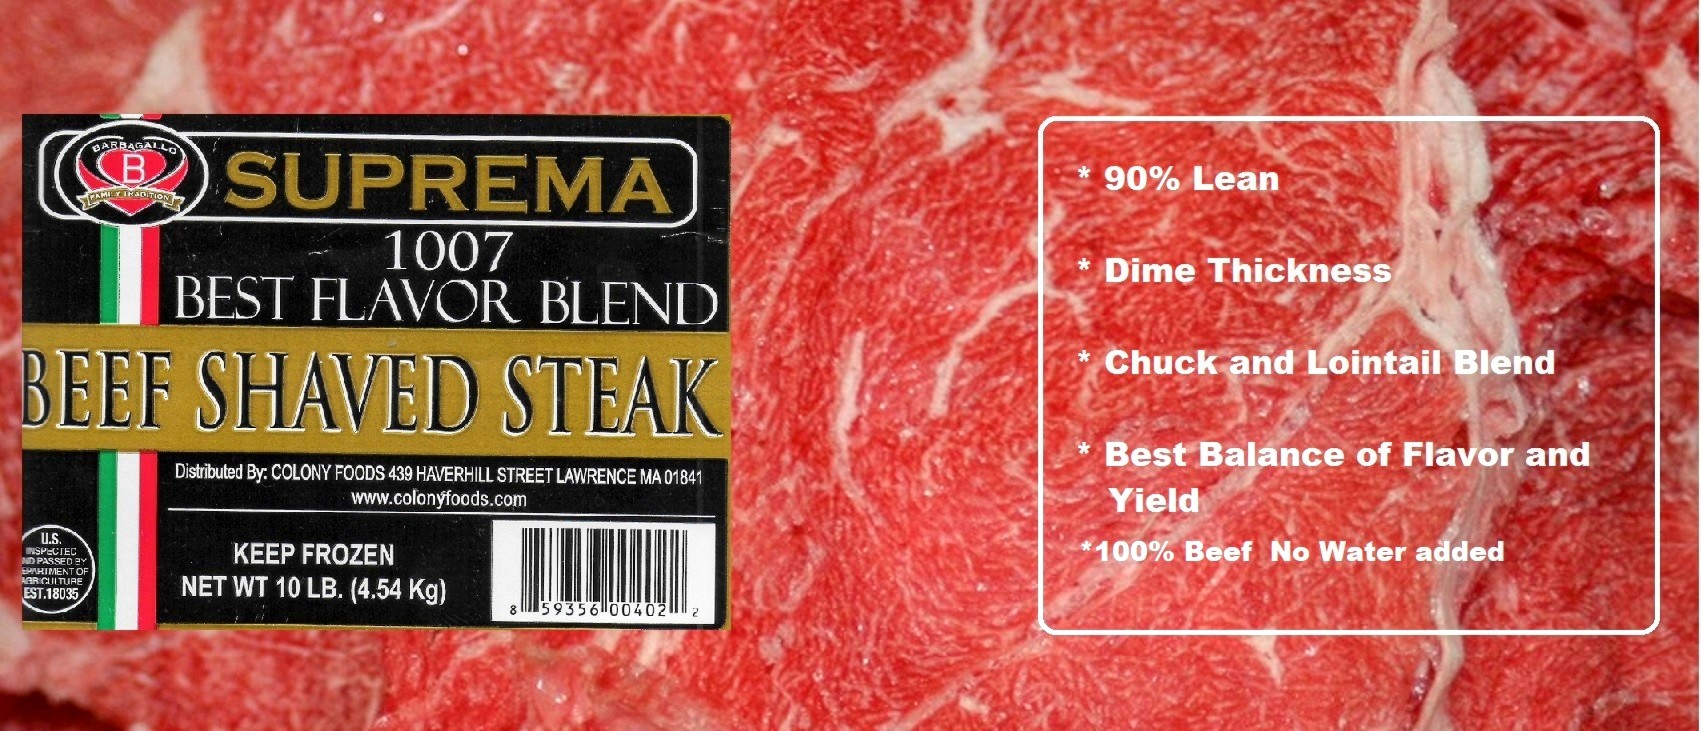 Suprema Best Flavor Blend Beef Shaved Steak